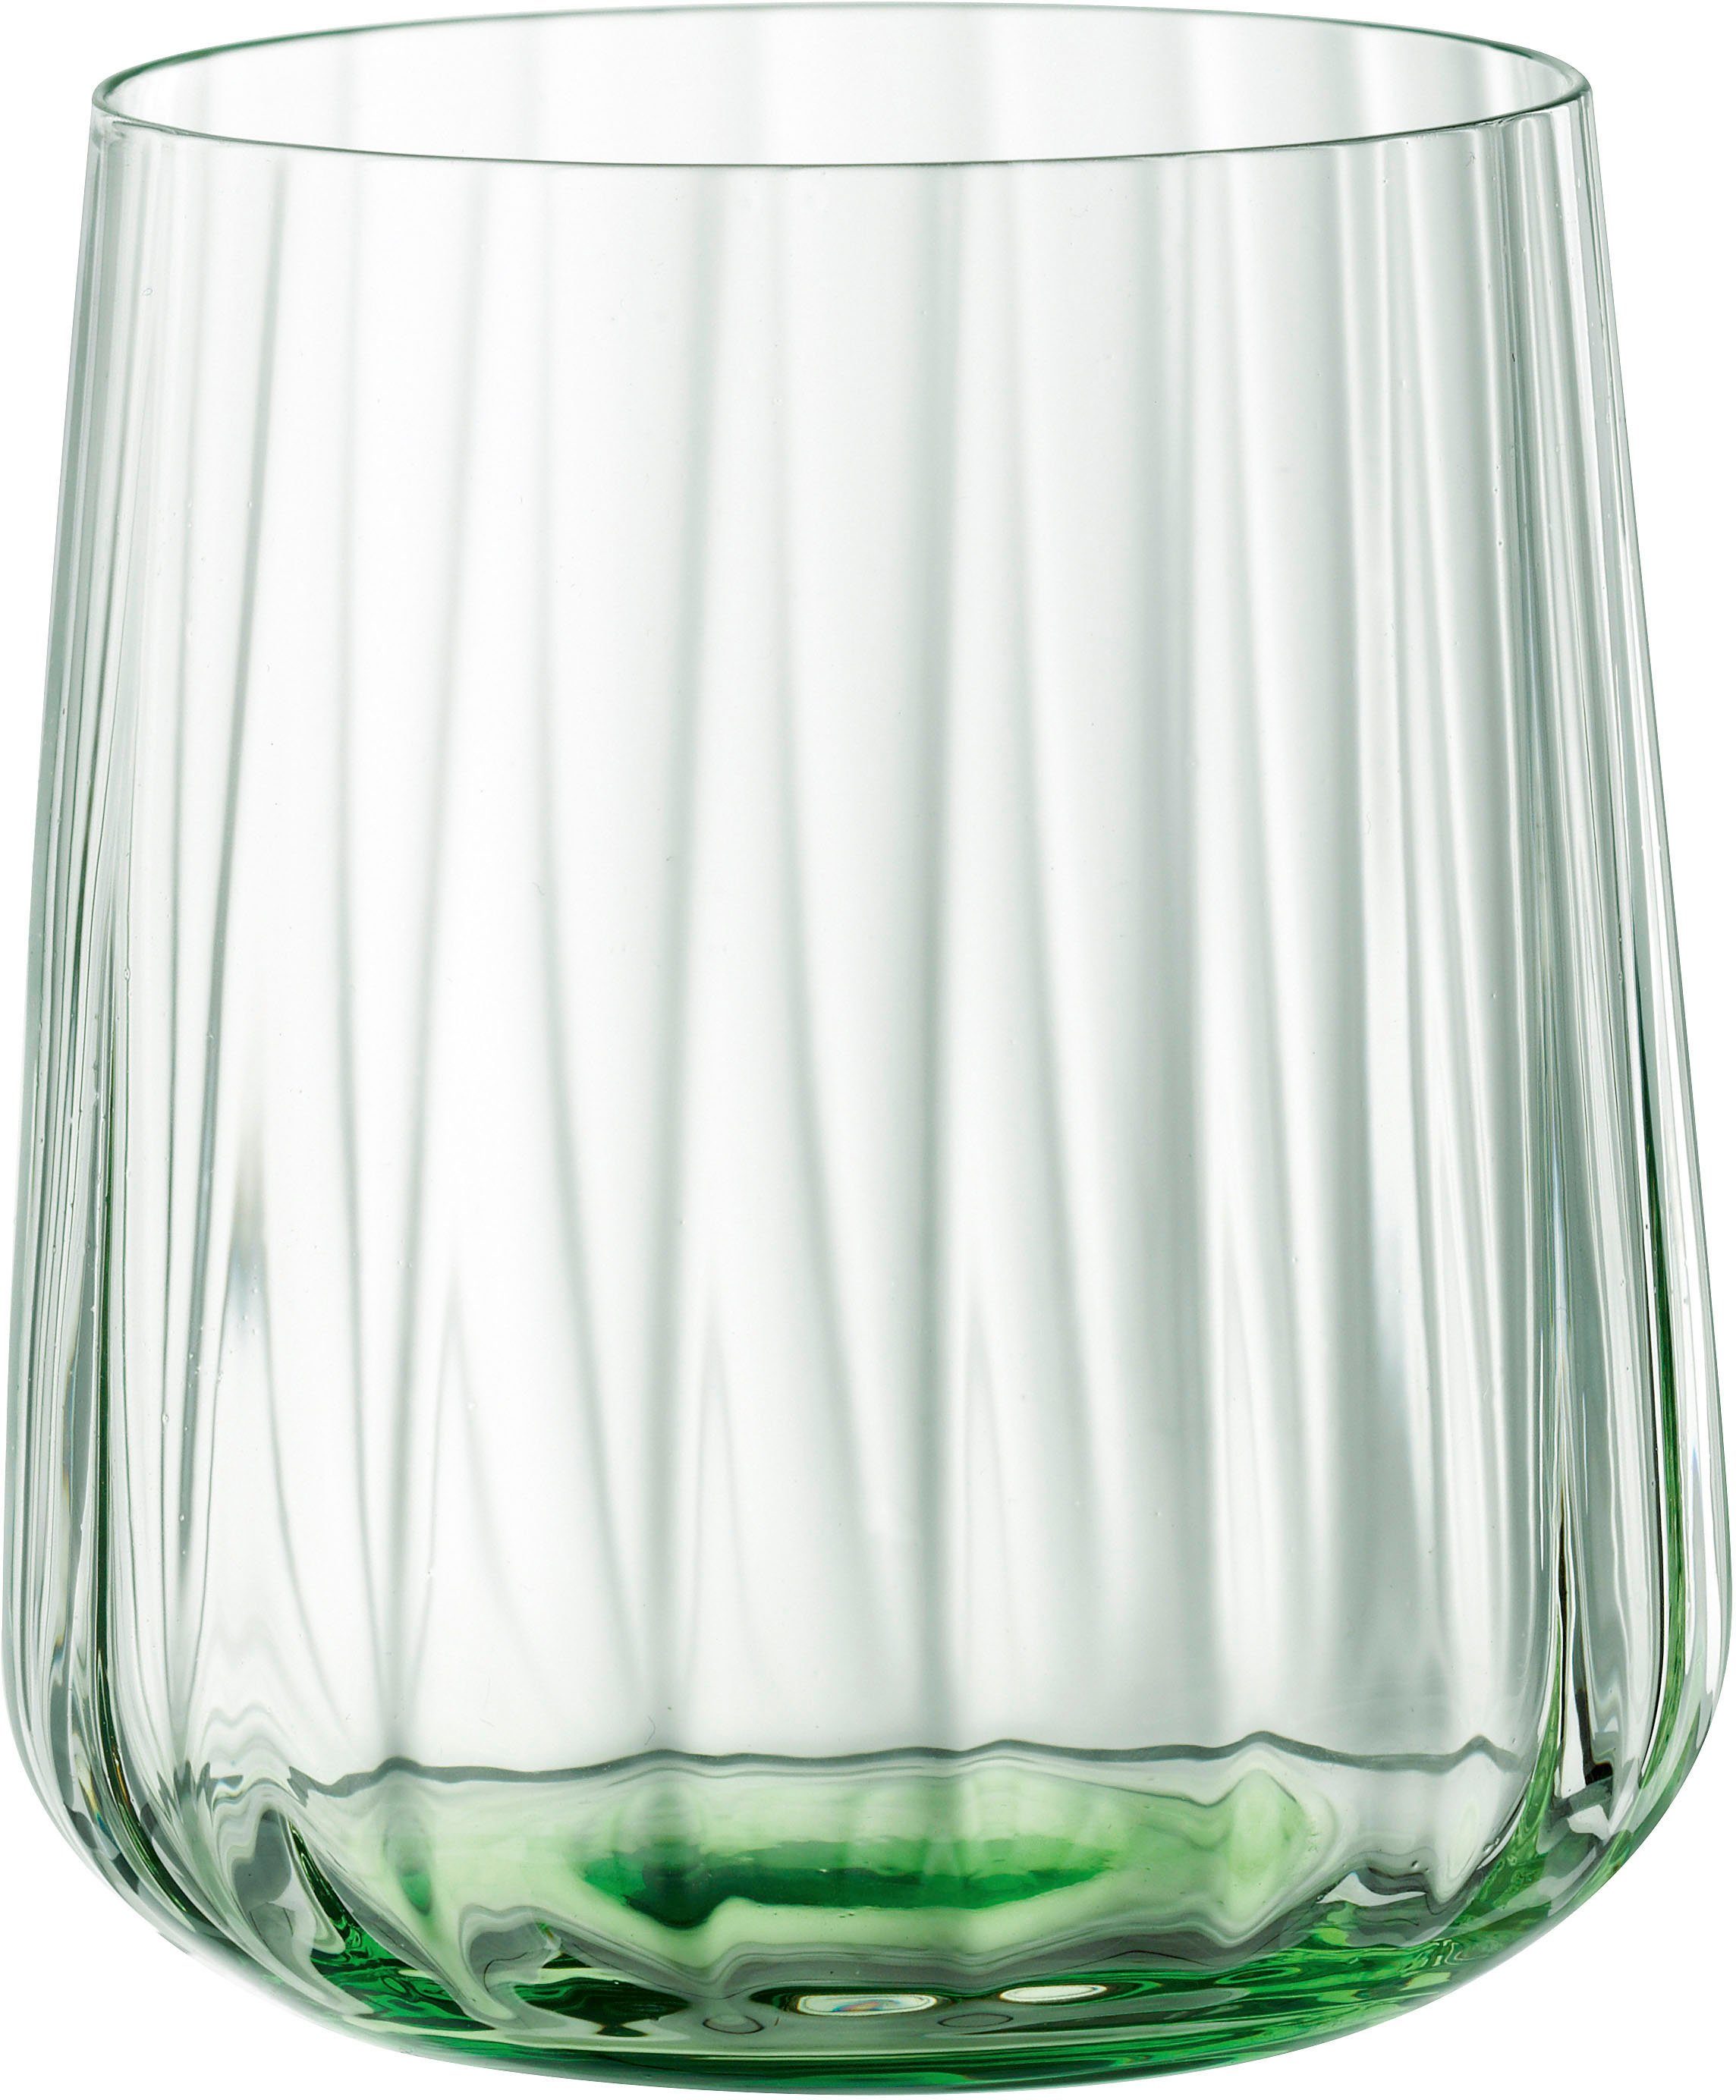 LifeStyle, 340 ml, 2-teilig, Becher 2er-Set SPIEGELAU Kristallglas, Praktisches